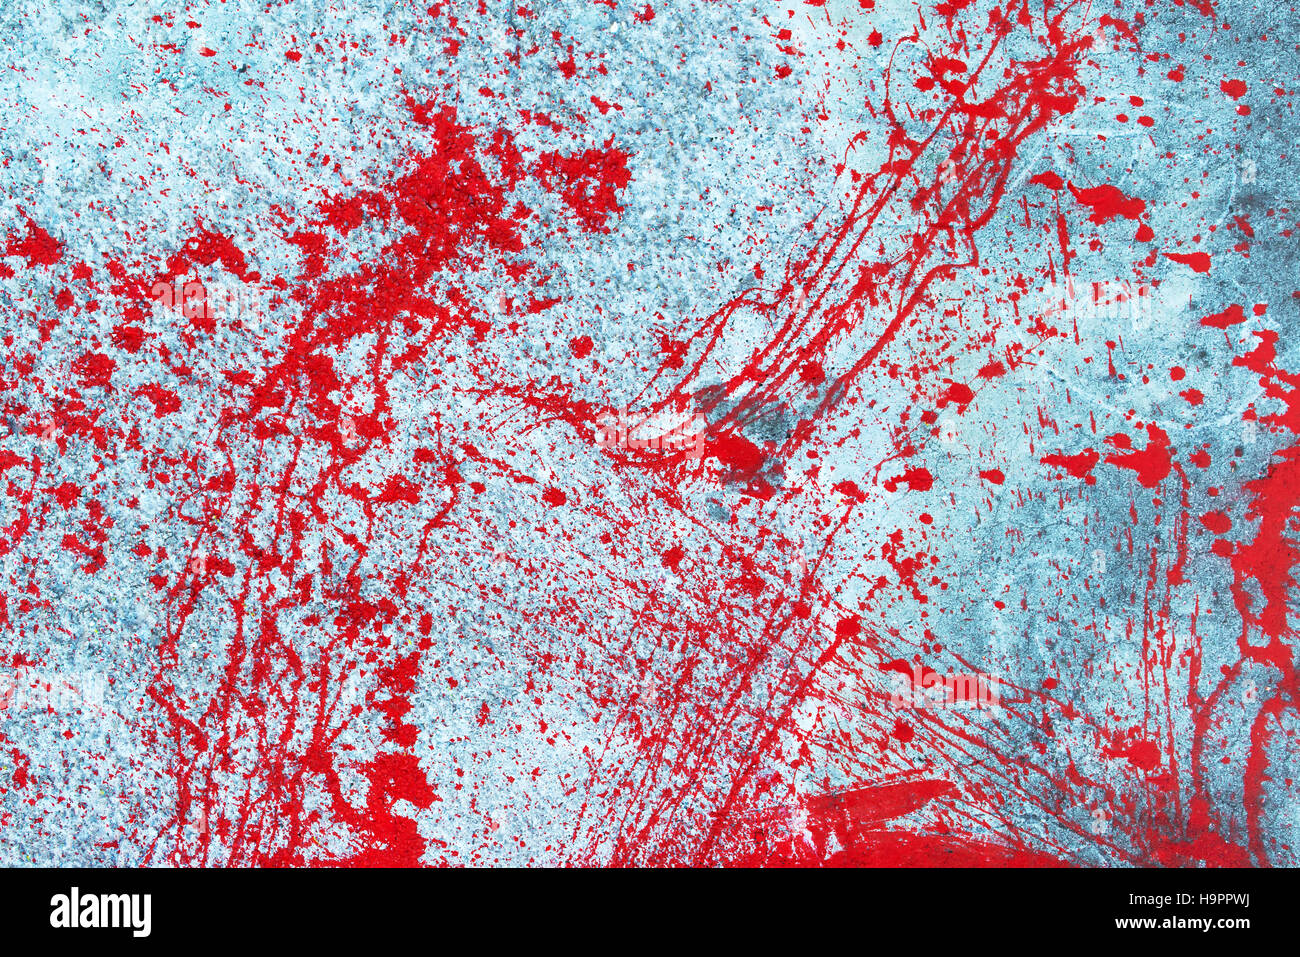 Rote Blutkörperchen Farbspritzer, Spritzen und sprühen auf Wand  Stockfotografie - Alamy